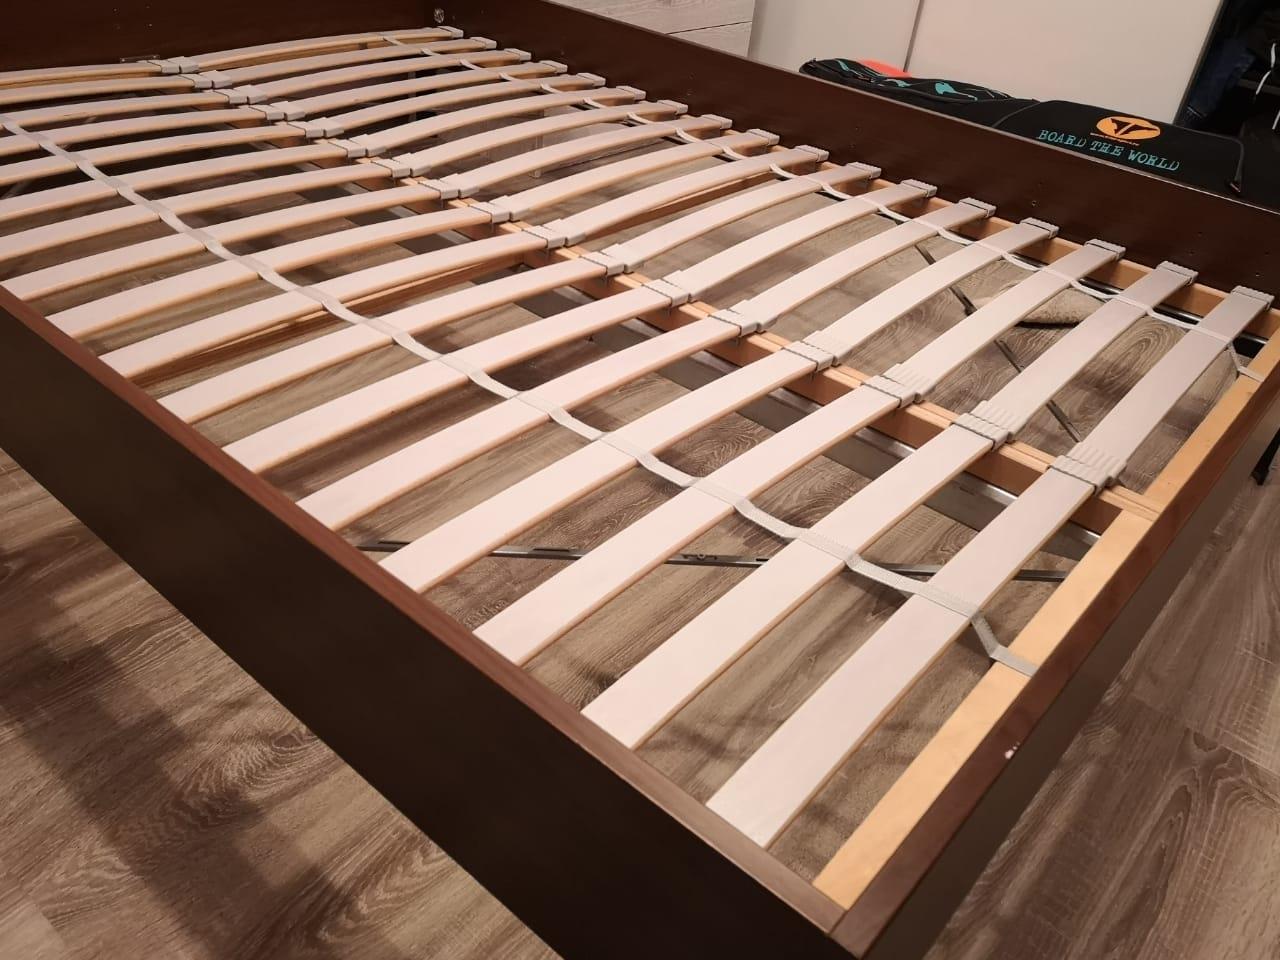 новая деревянная кровать скрипит